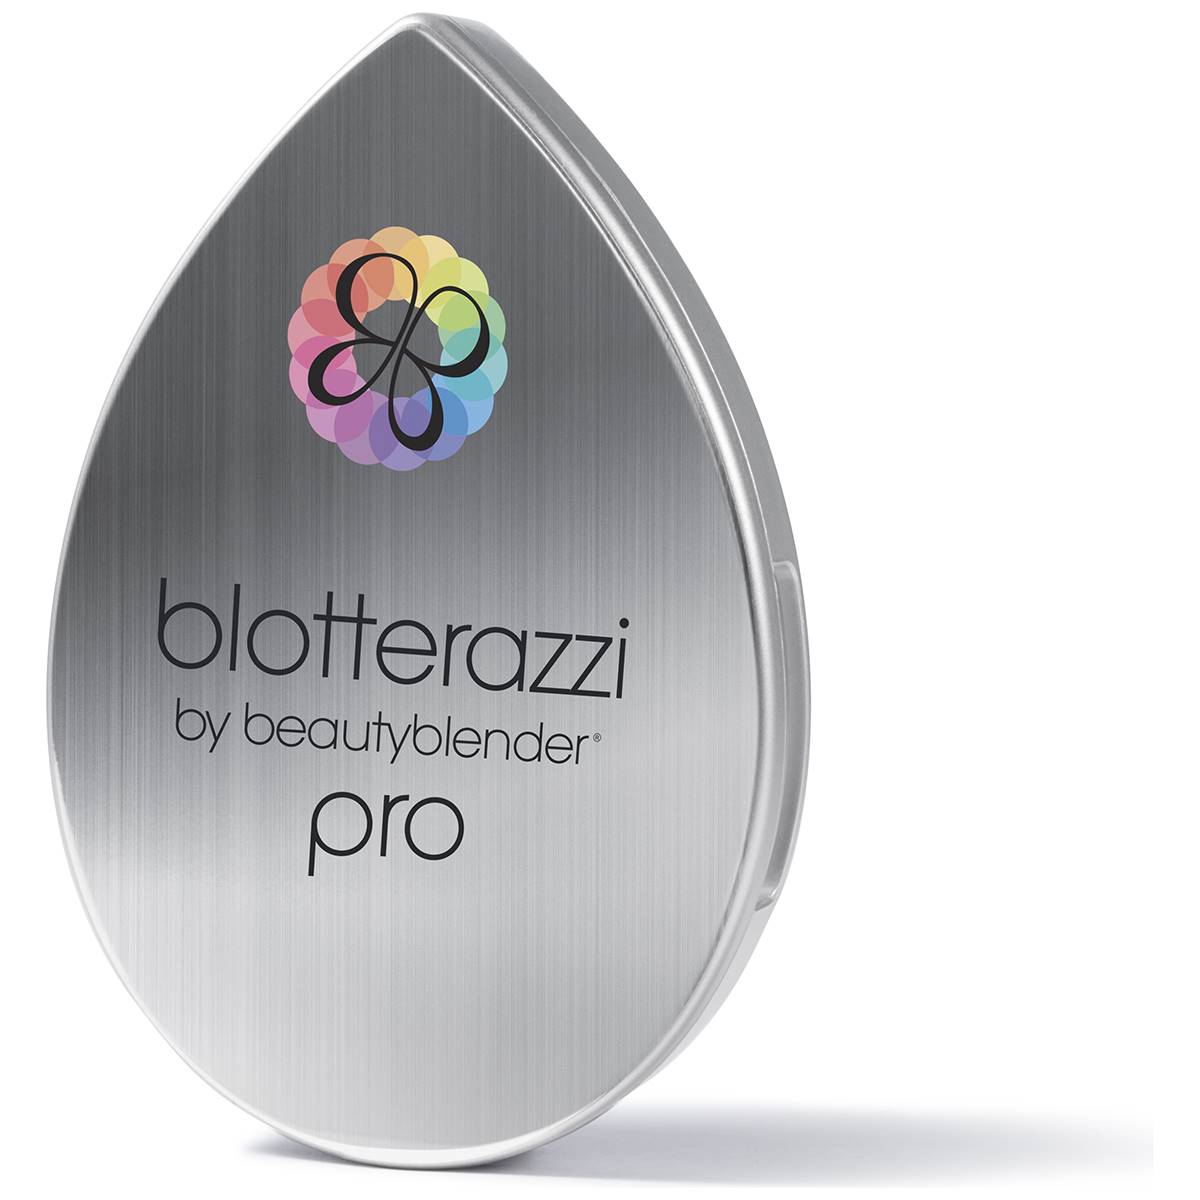 Beautyblender(R) Blotterazzi Pro